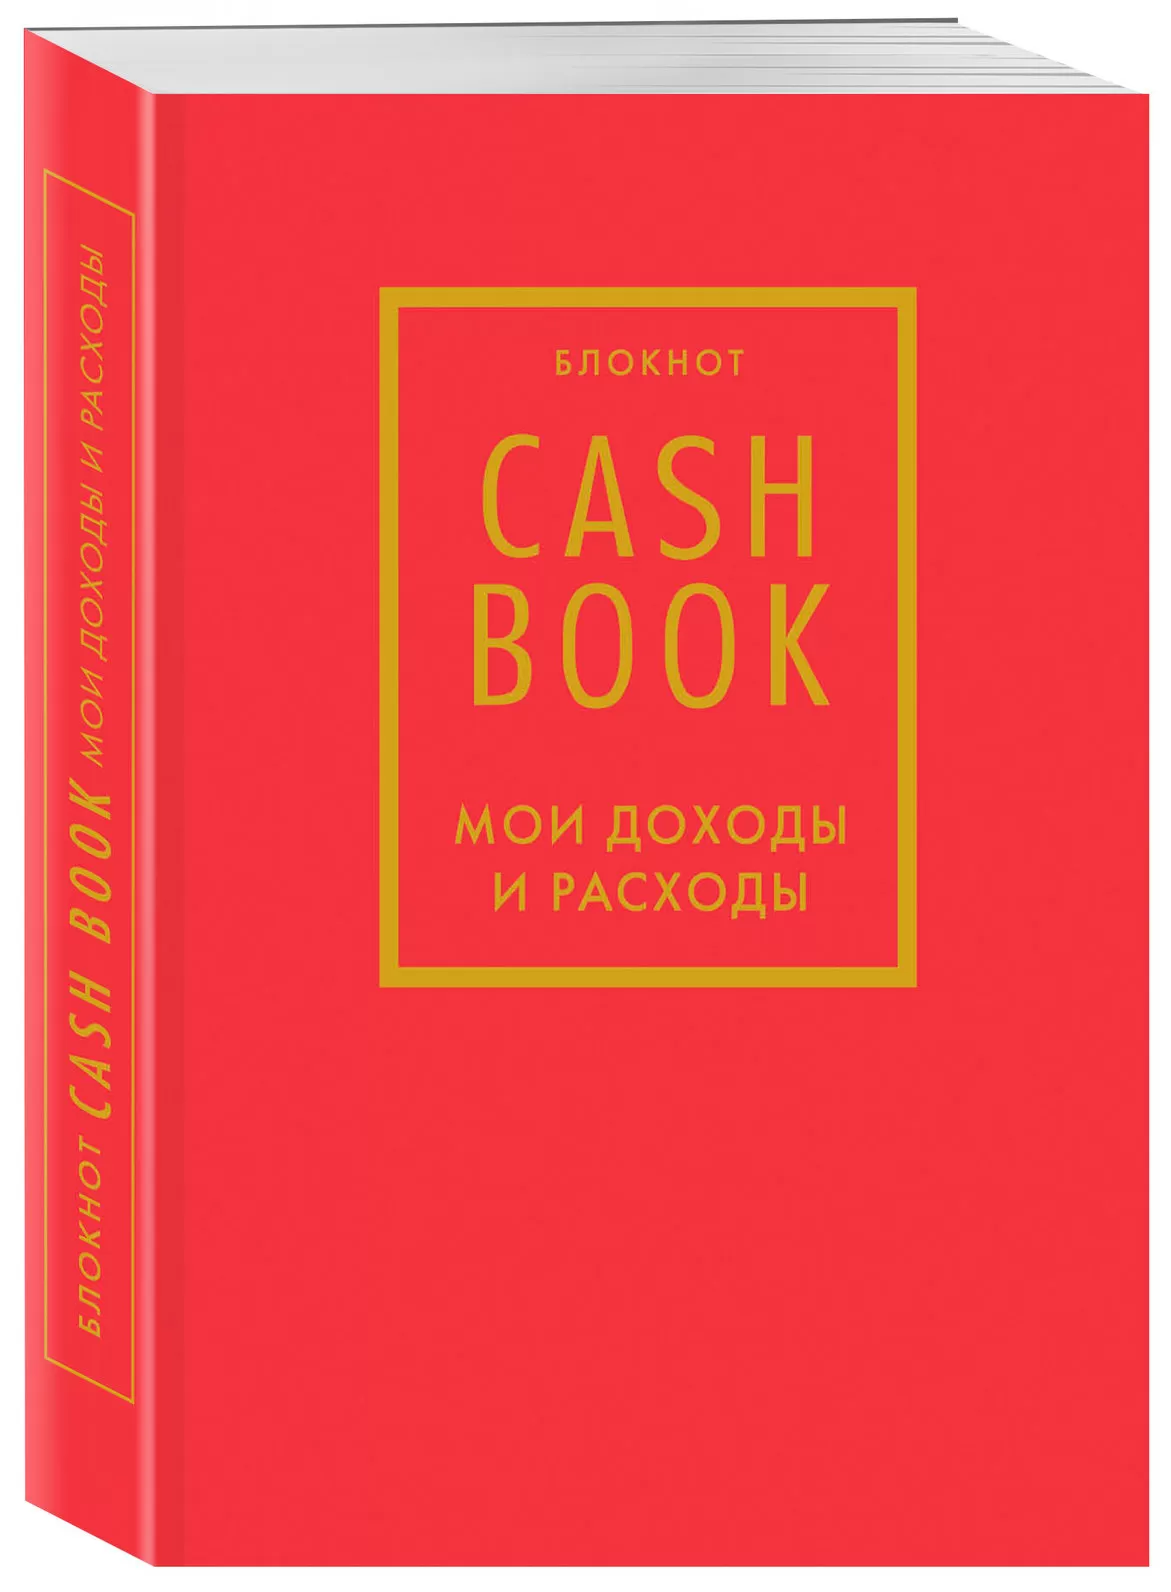 CashBook. Мои доходы и расходы. 7-е издание (красный)